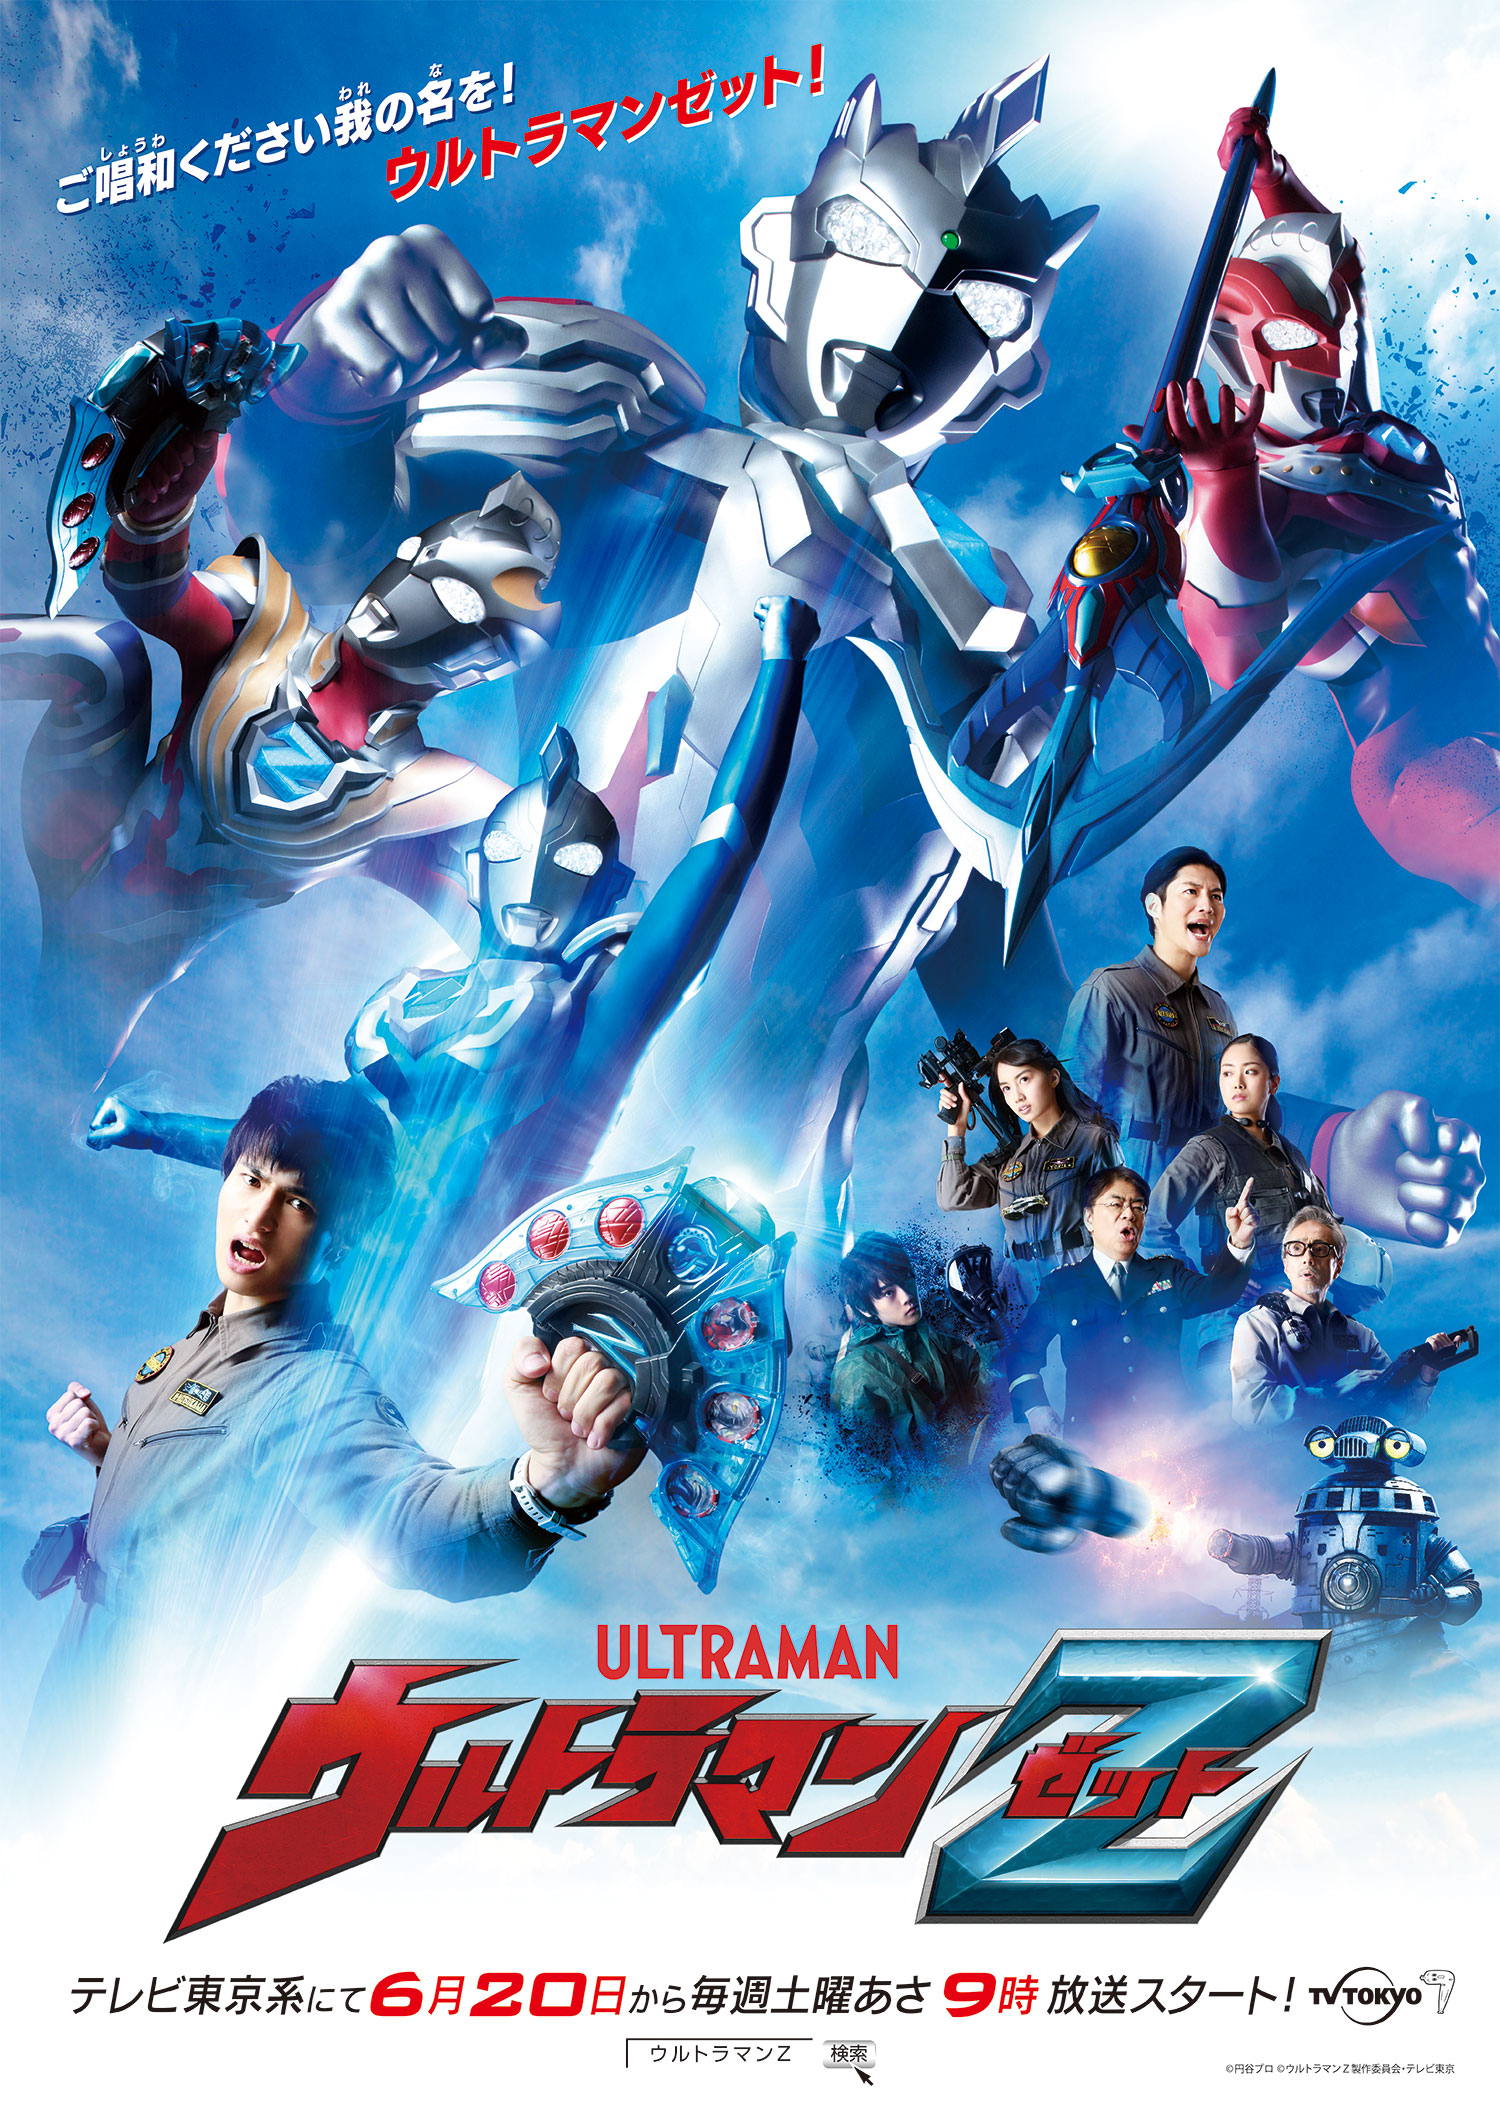 Ultraman Z (series) | TsuburayaWiki | Fandom